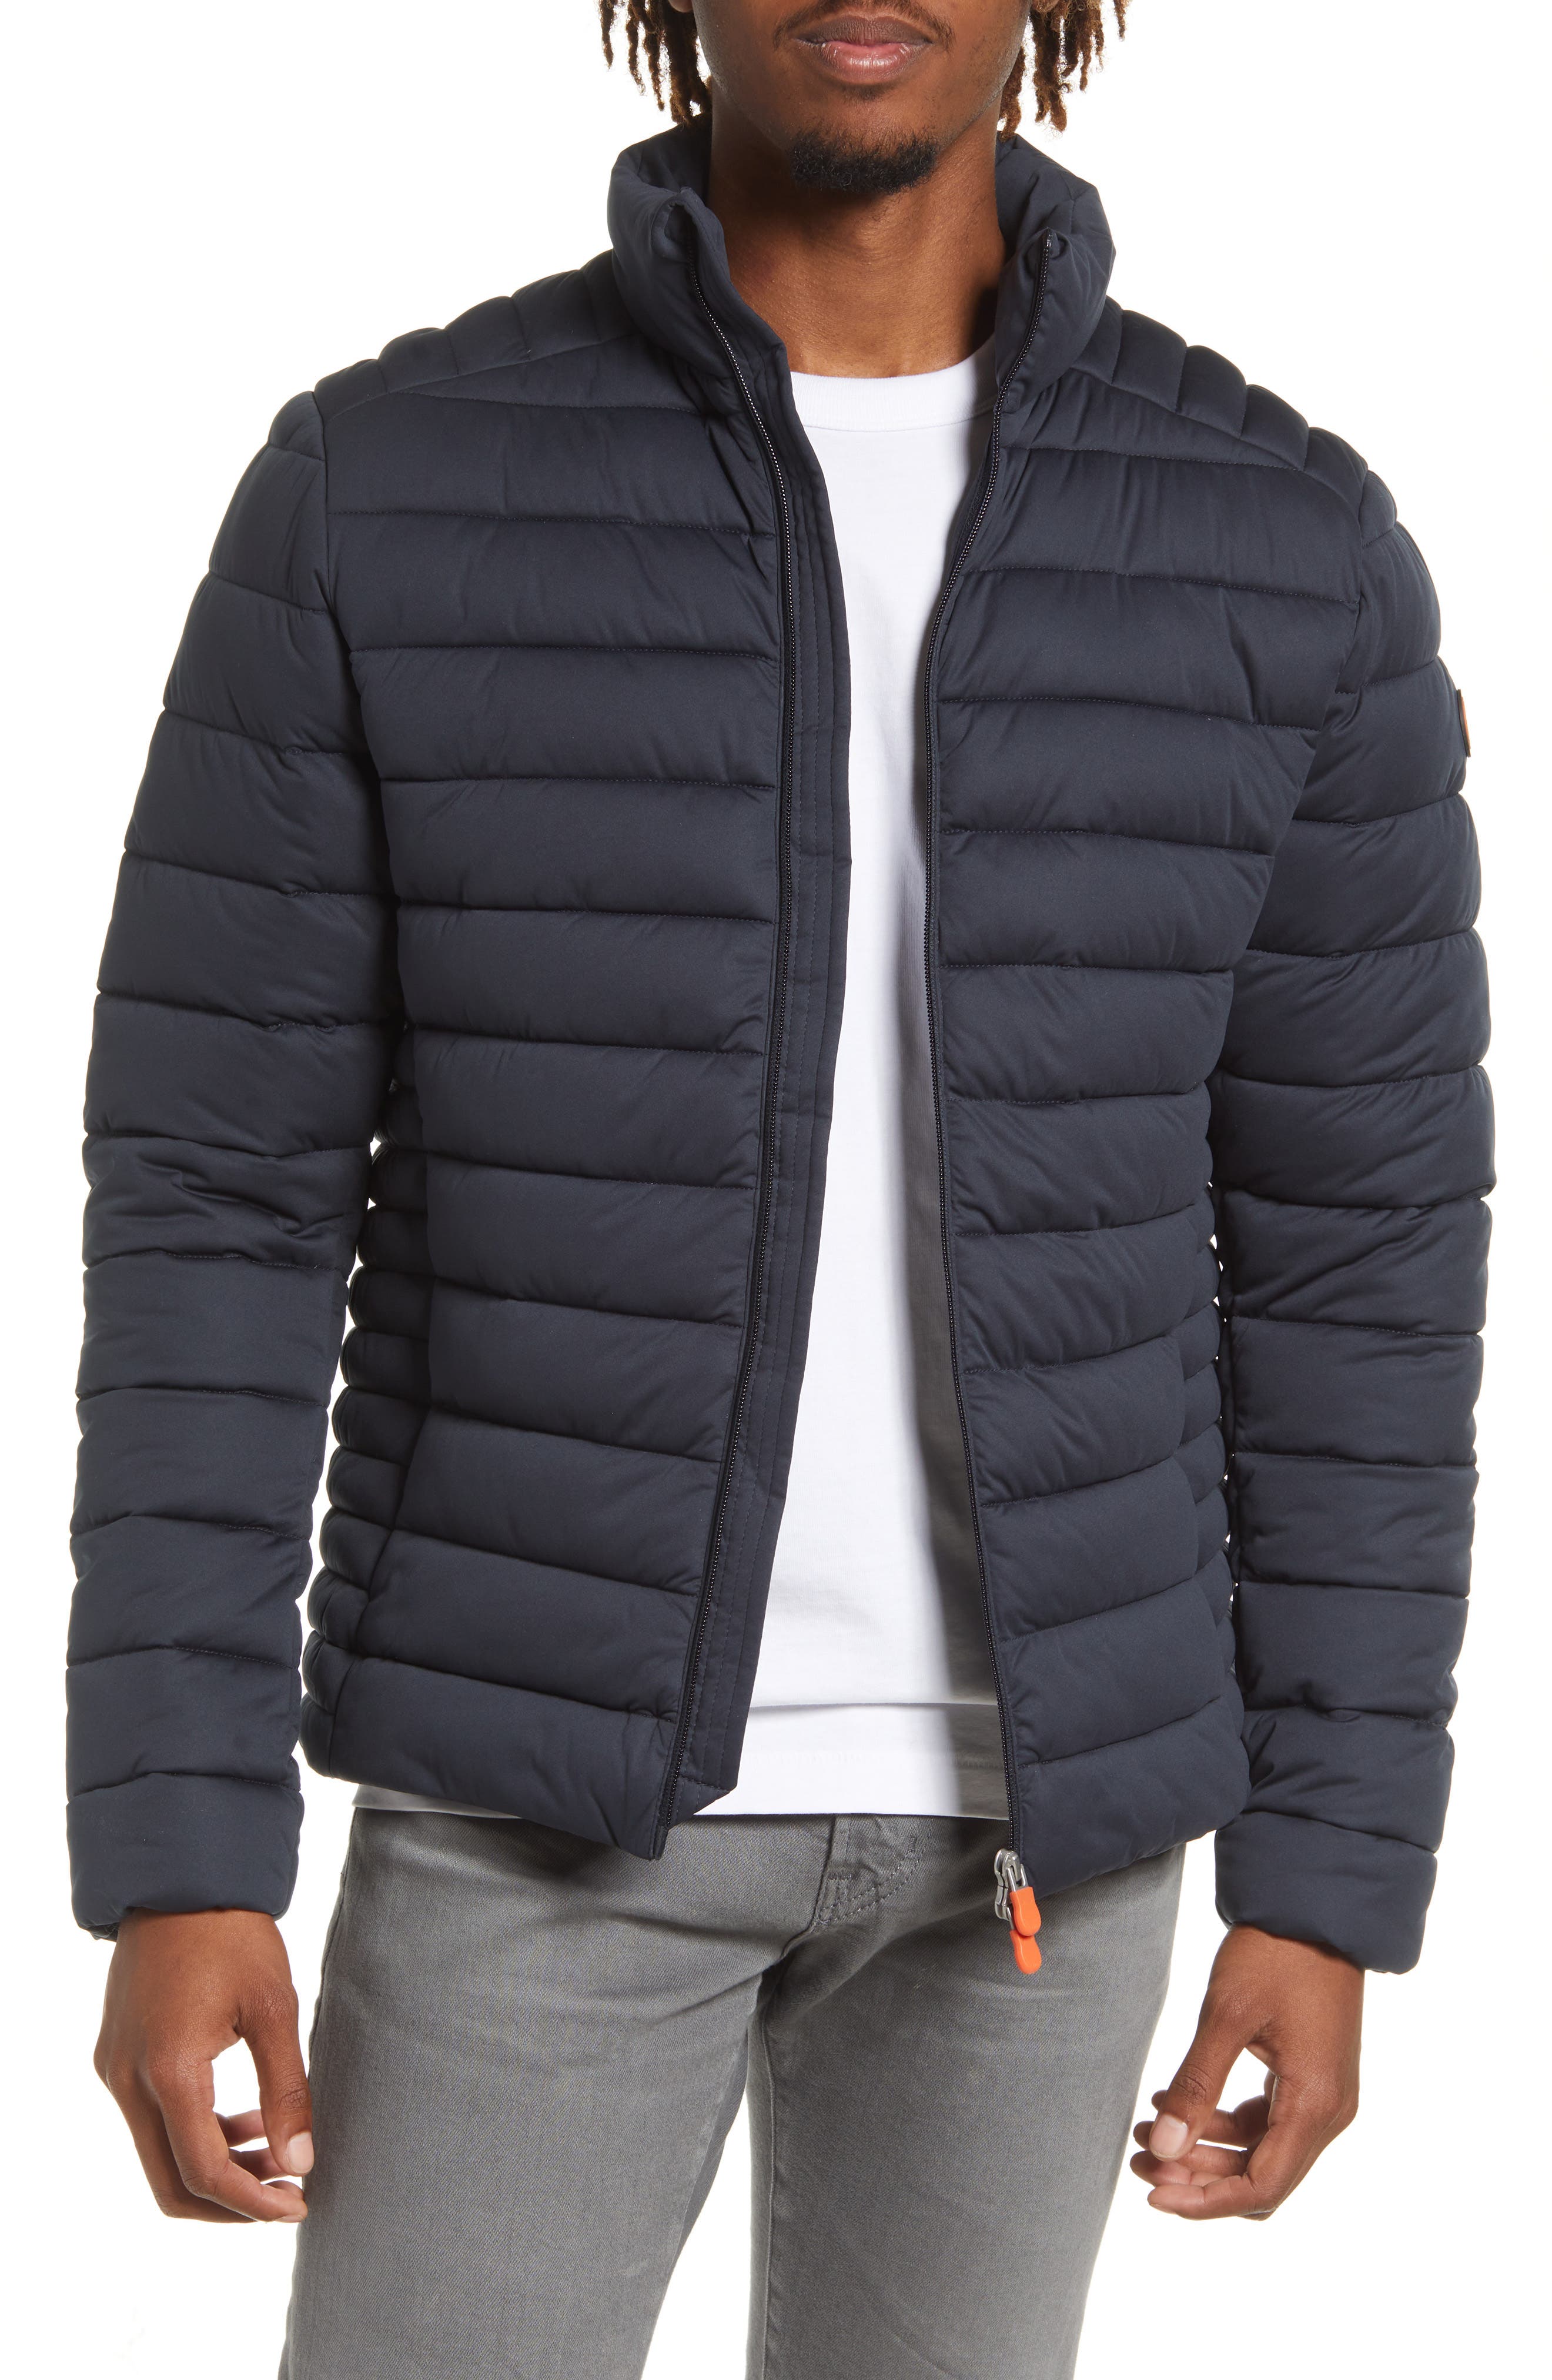 NE_ Men's Fashion Winter Warm Down Jacket Stand Collar Slim Zip Coat Outwear H 